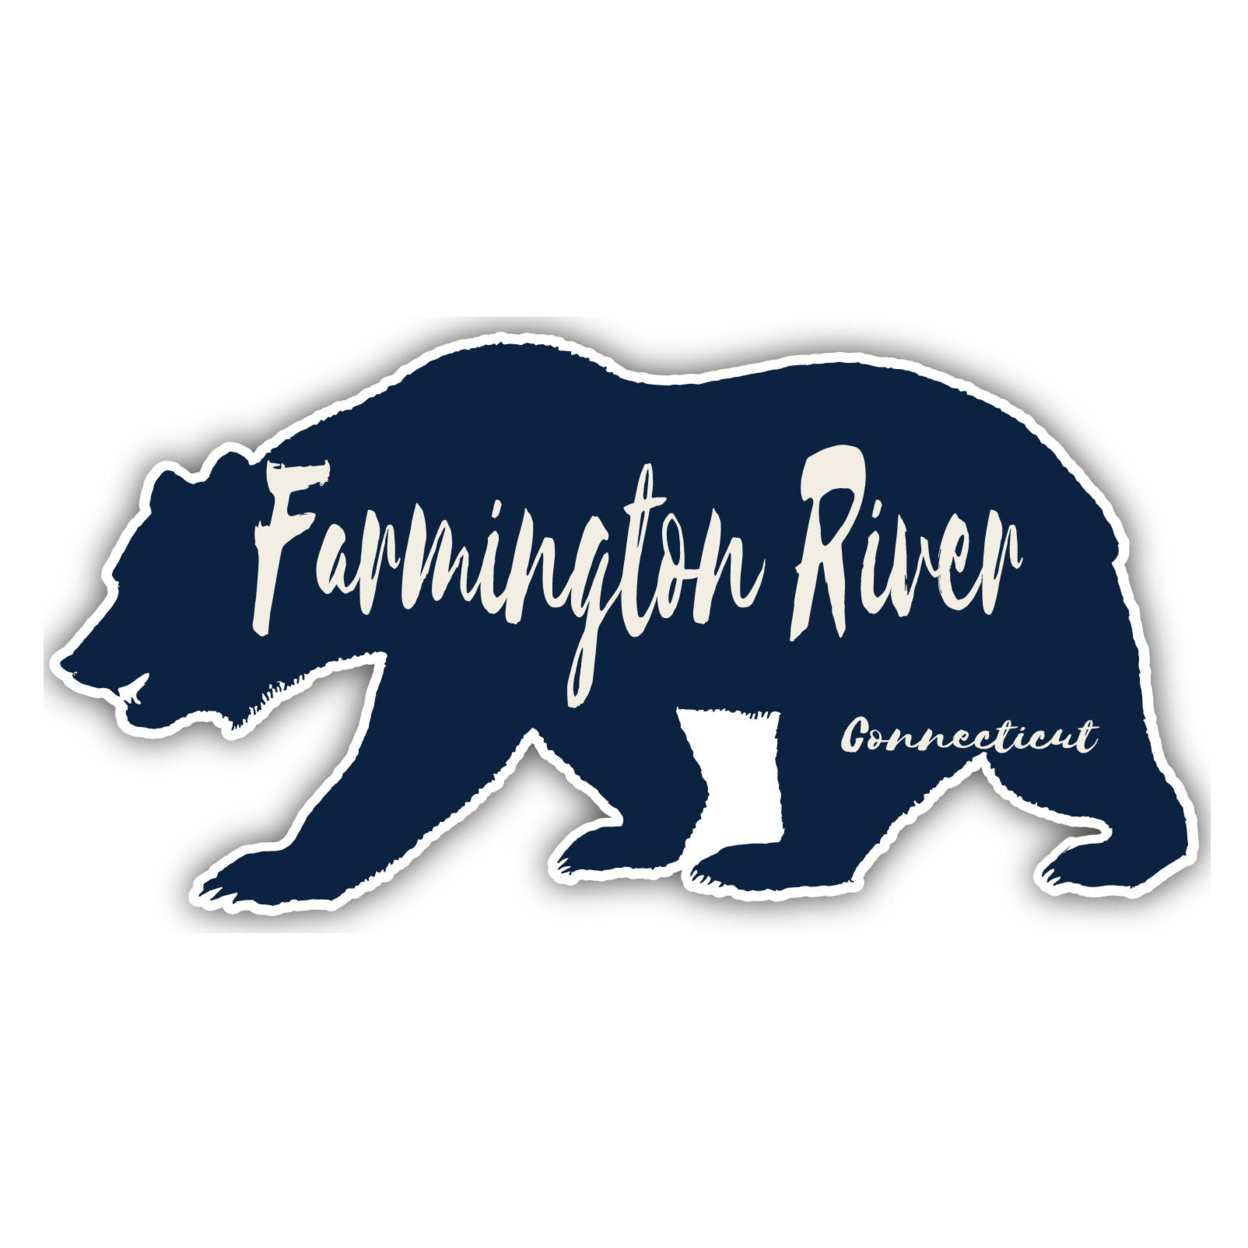 Farmington River Connecticut Souvenir Decorative Stickers (Choose Theme And Size) - Single Unit, 2-Inch, Bear